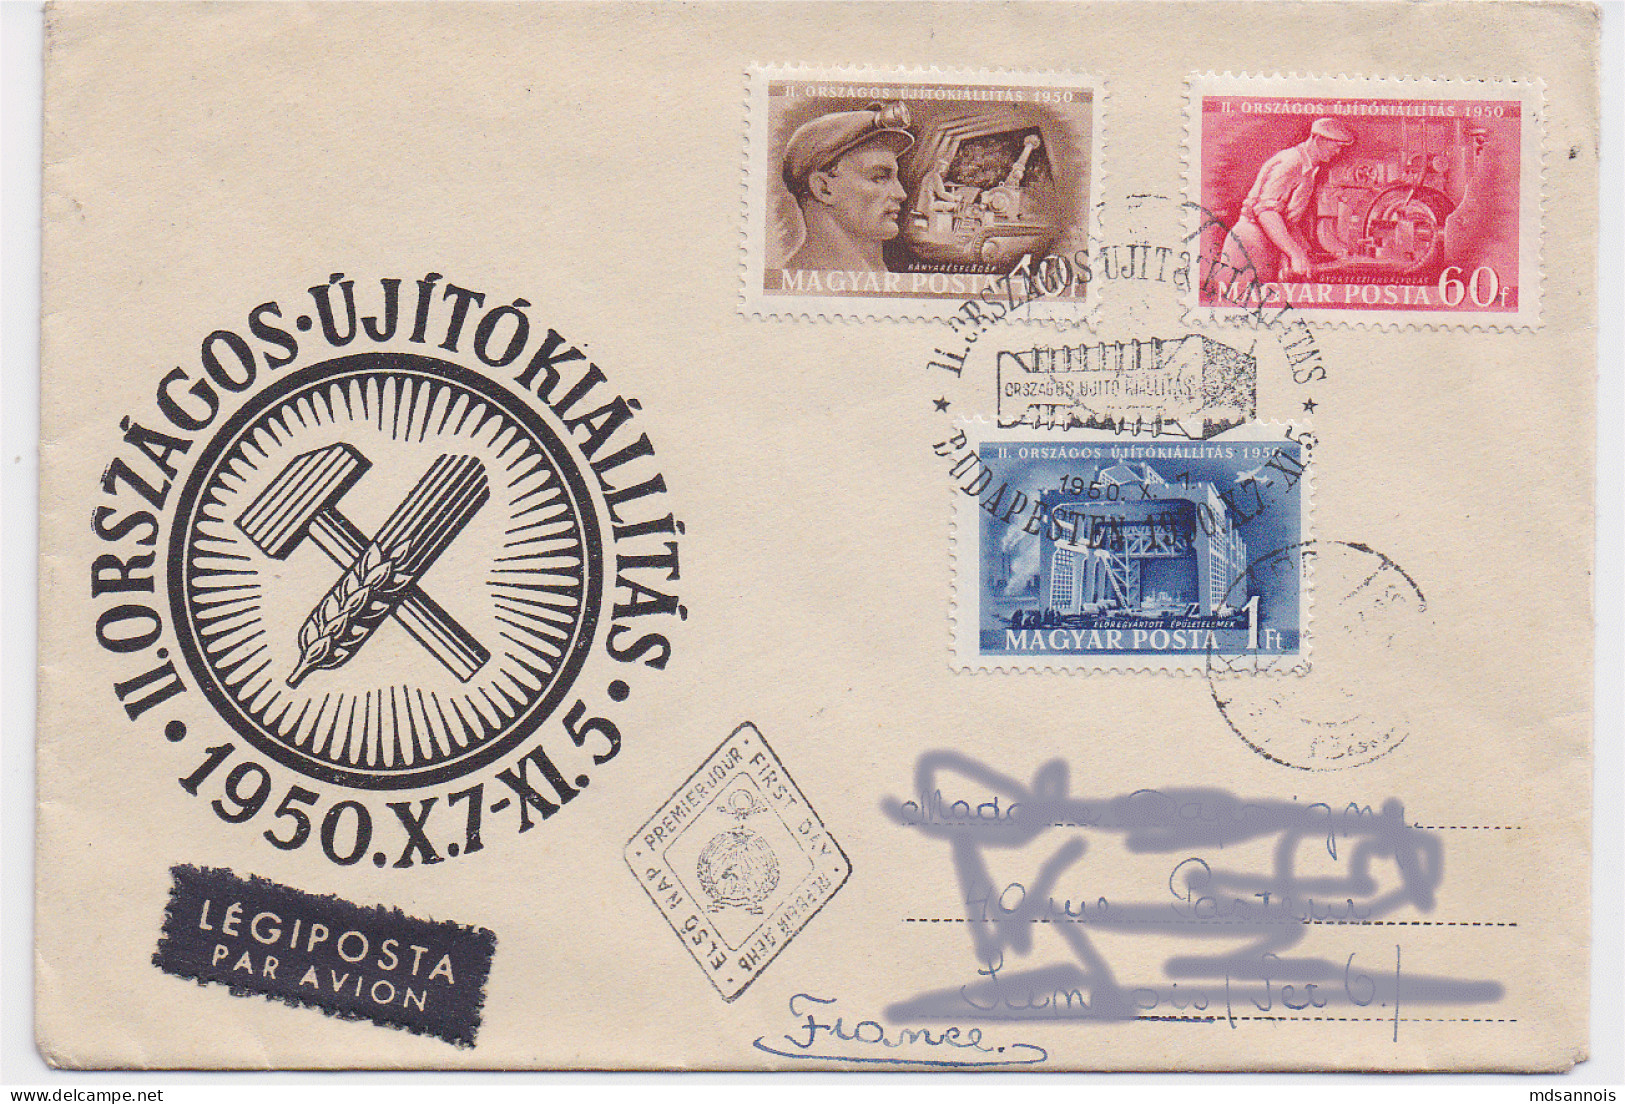 Hongrie Enveloppe Par Avion 1950 Premier Jour N° 968 à 970 (les Timbres Vendus Sont Les Timbres Scannés) - Covers & Documents